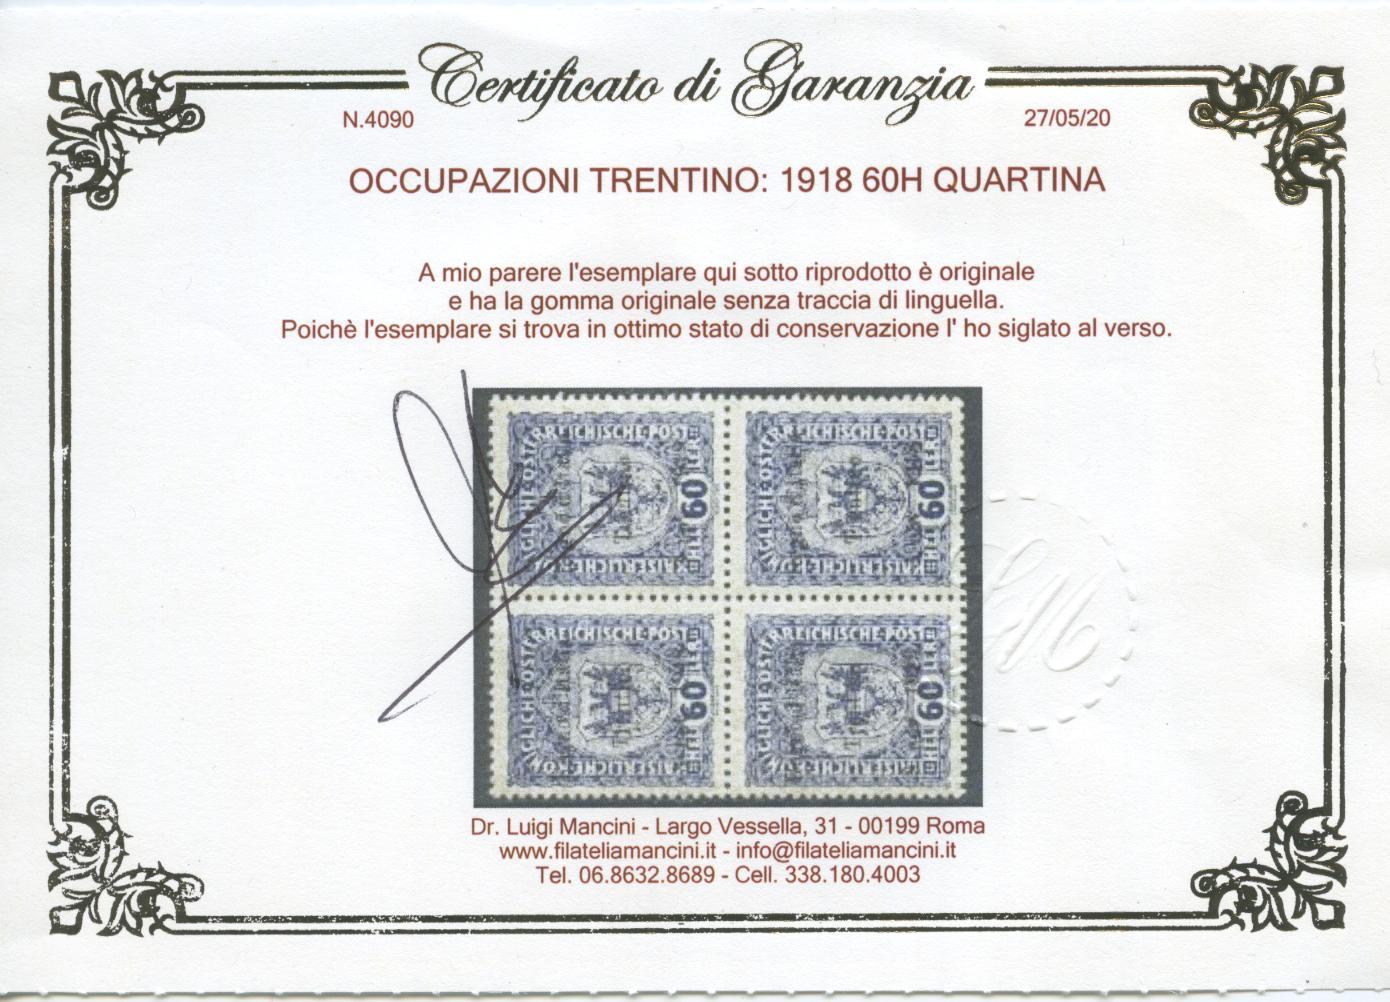 Scansione lotto: OCCUPAZIONI TRENTINO 1918 60H QUARTINA 3 ** LUSSO CERT.